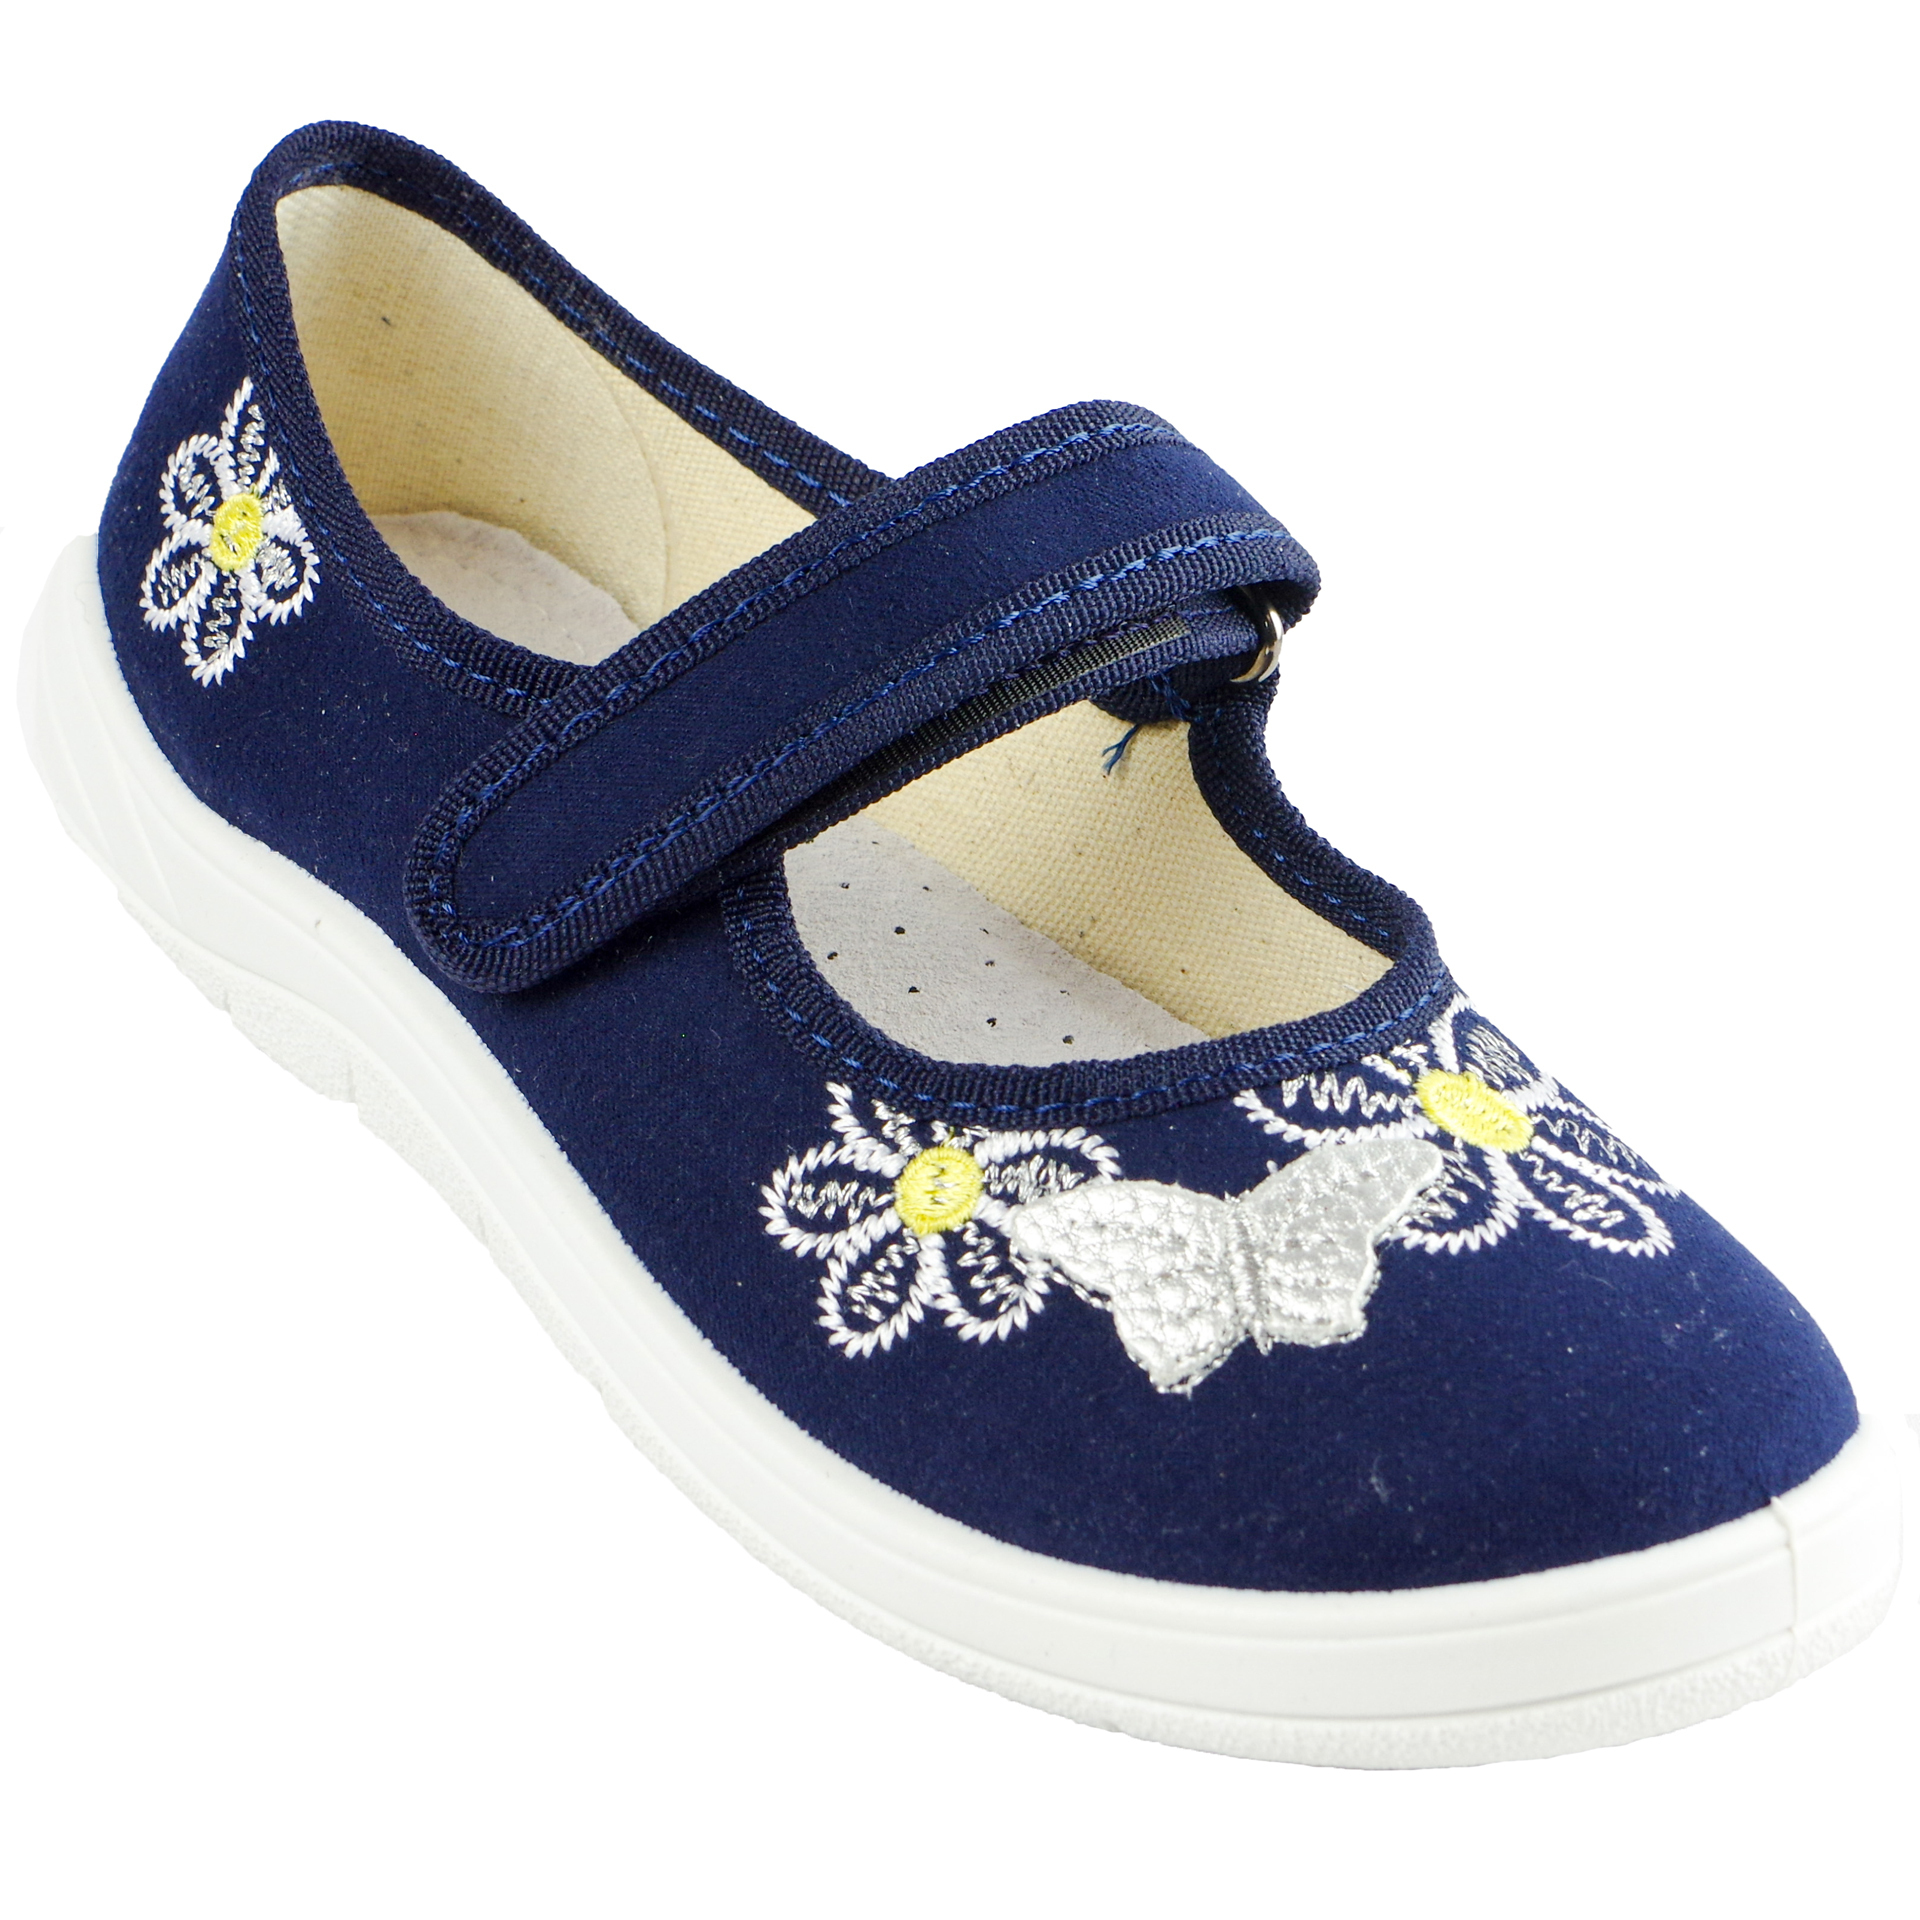 Текстильная обувь для девочек Тапочки Алина (1812) цвет темно-синий 24-30 размеры – Sole Kids